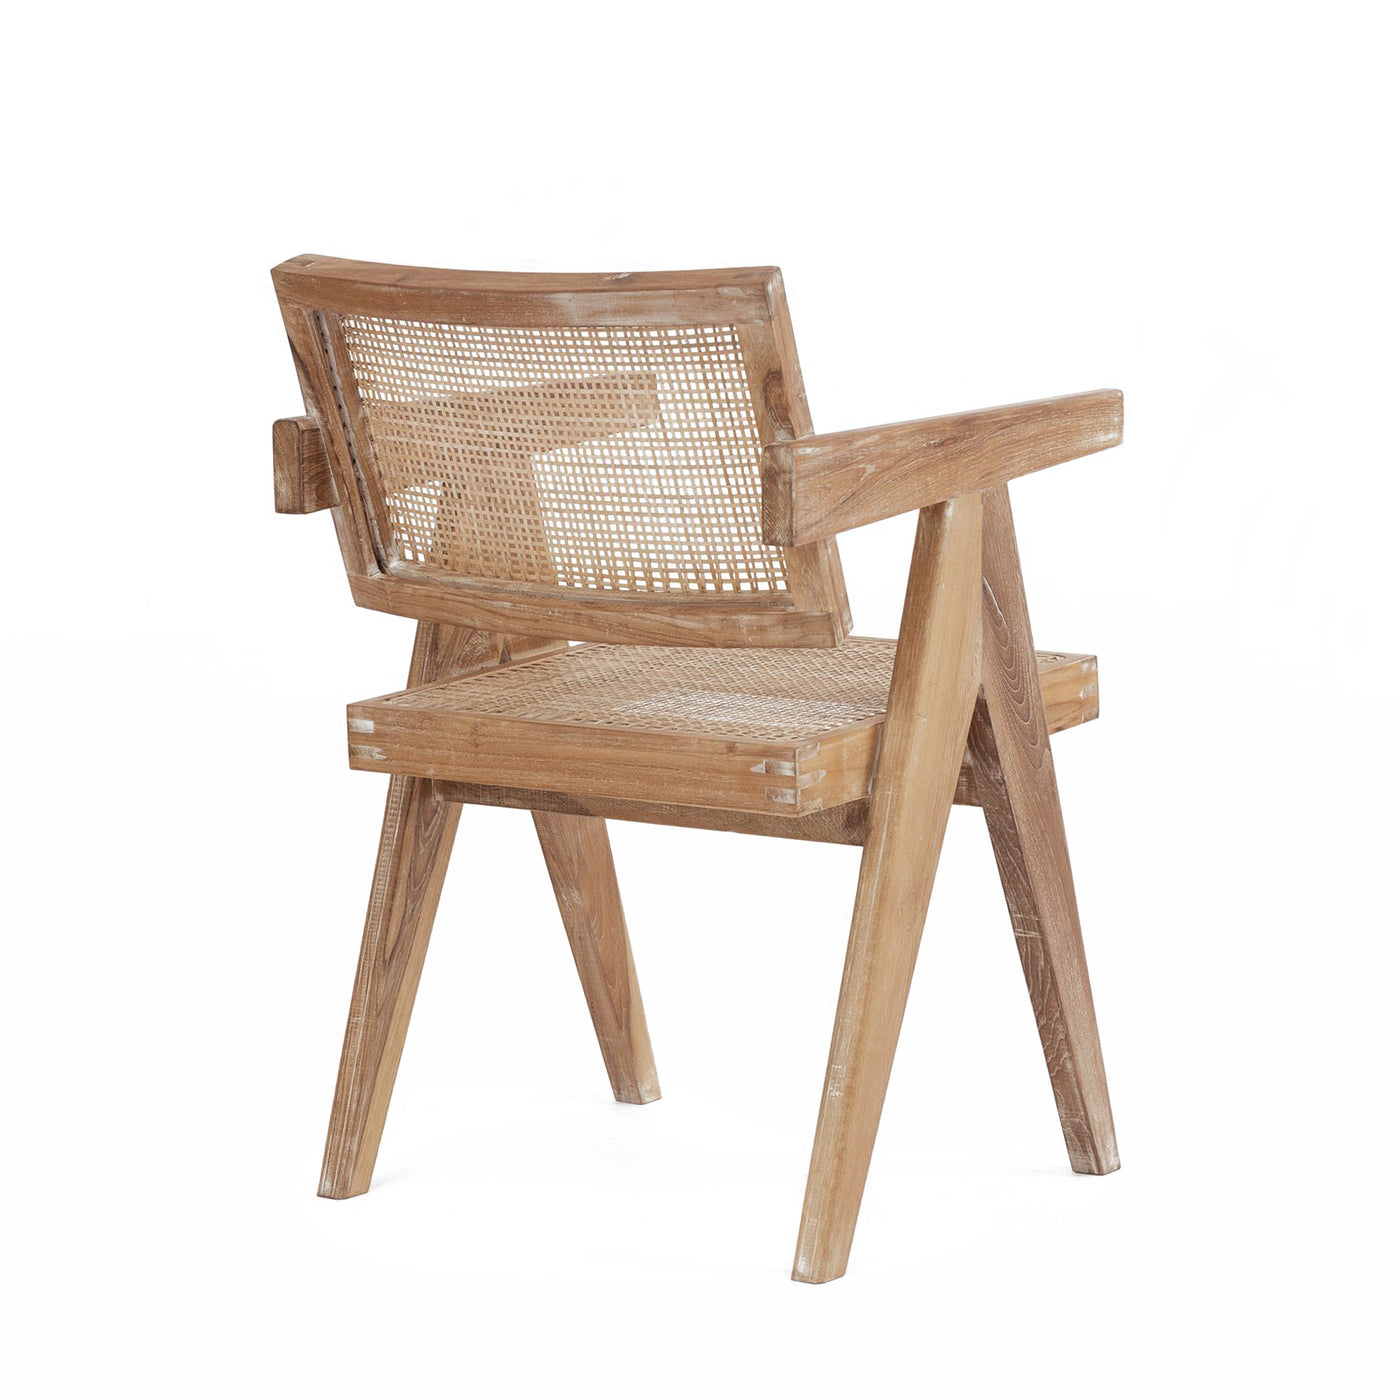 Pierre Jaenneret, židle podle pierre jeanneret, design 50. let, minimaistická židle, Srelle, Židle do minimalistických interiérů, luxusní židle, Pierre židle